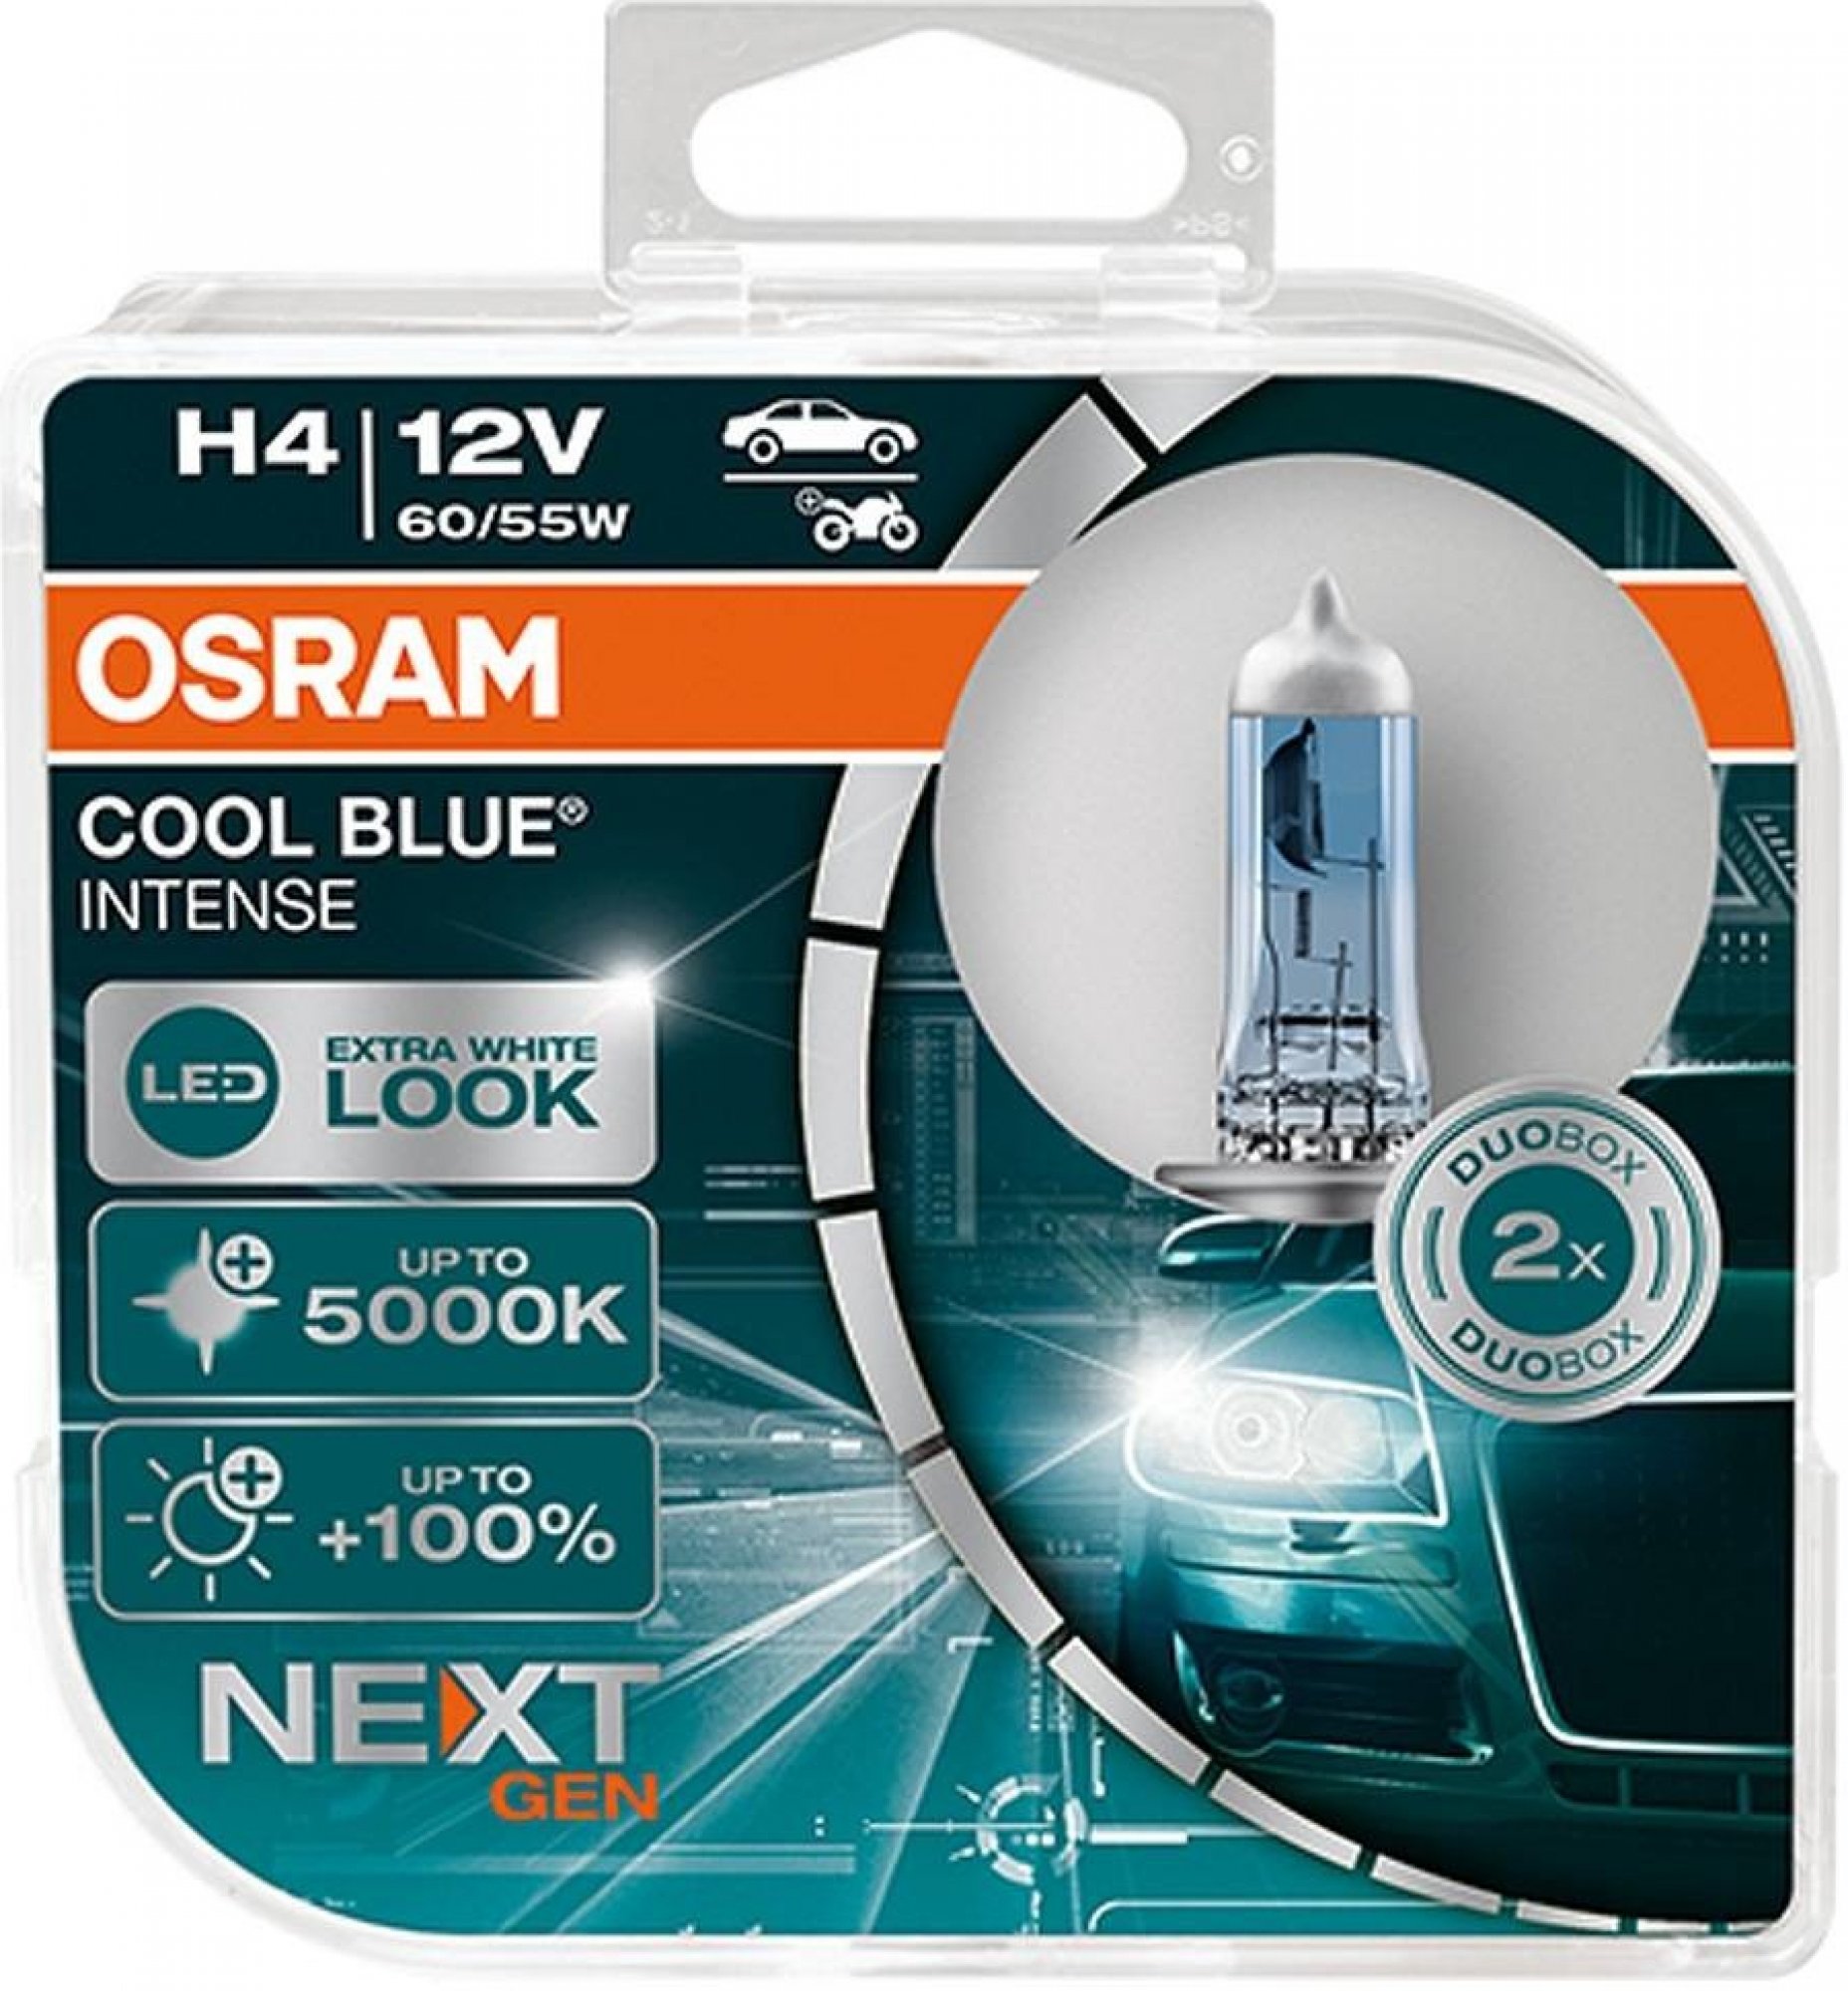 Osram halogen headlight lamps COOL BLUE INTENSE (NEXT GEN) H4